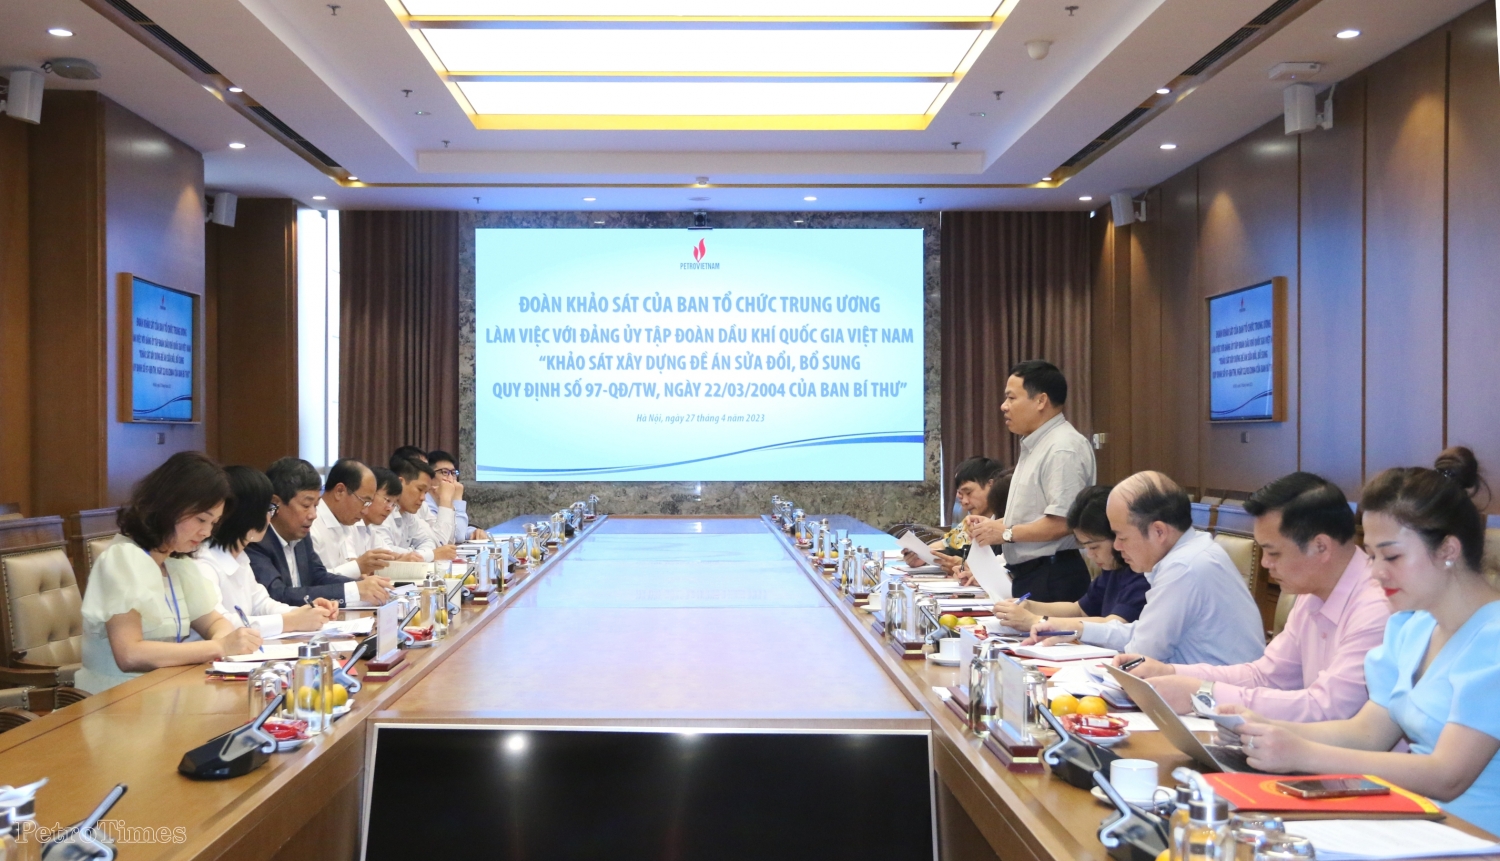 Khảo sát việc thực hiện Quy định số 97-QĐ/TW của Ban Bí thư tại Đảng bộ Tập đoàn Dầu khí Quốc gia Việt Nam